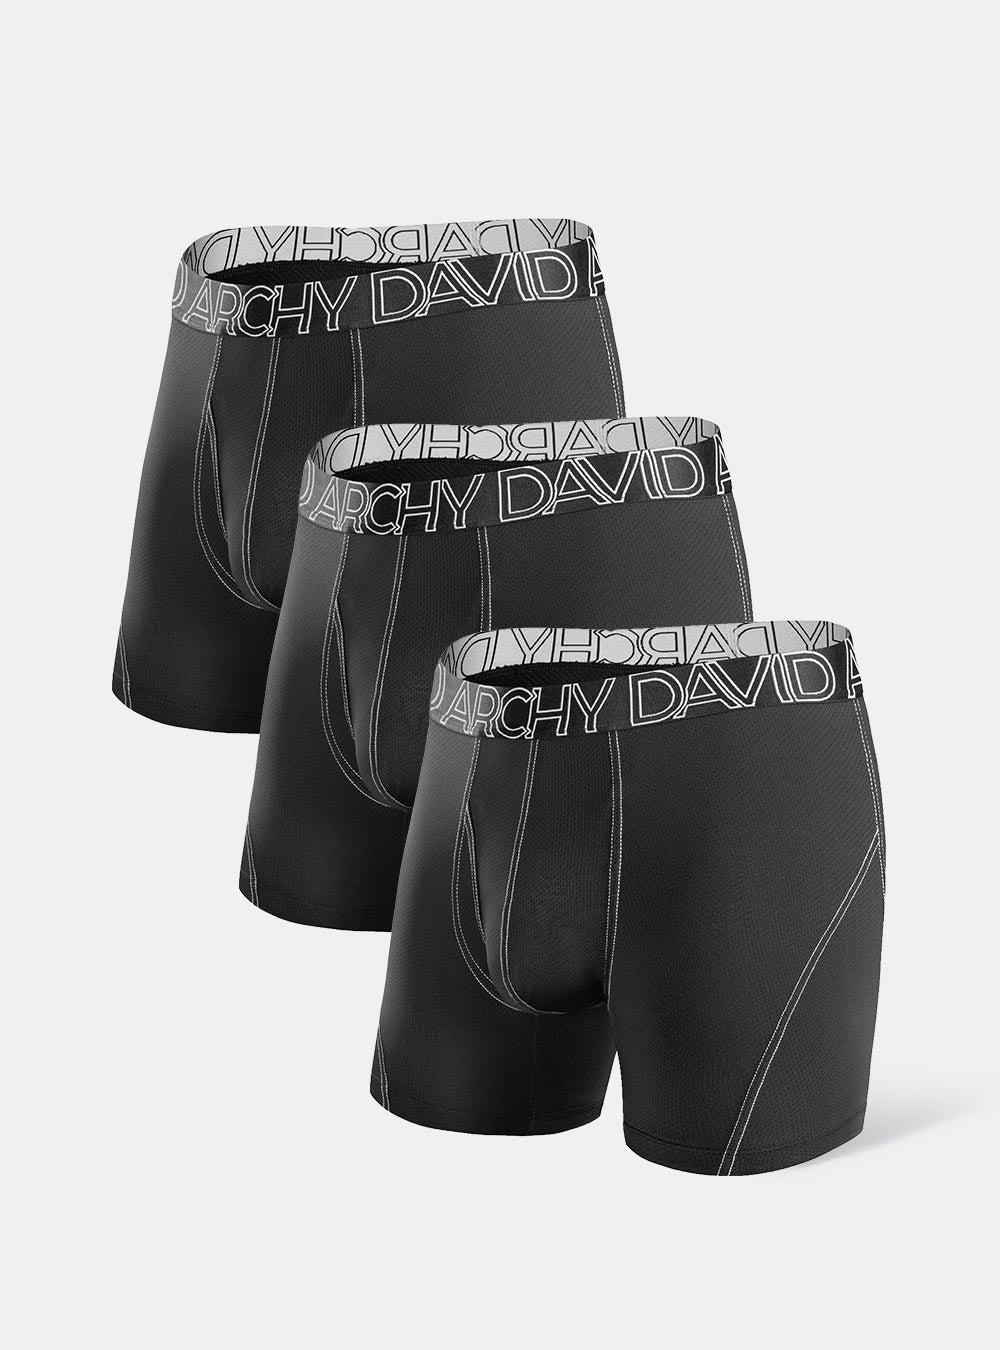 6 Pack Boxer Briefs Men Performance Sports Underwear Cool Quick Dry Waist 